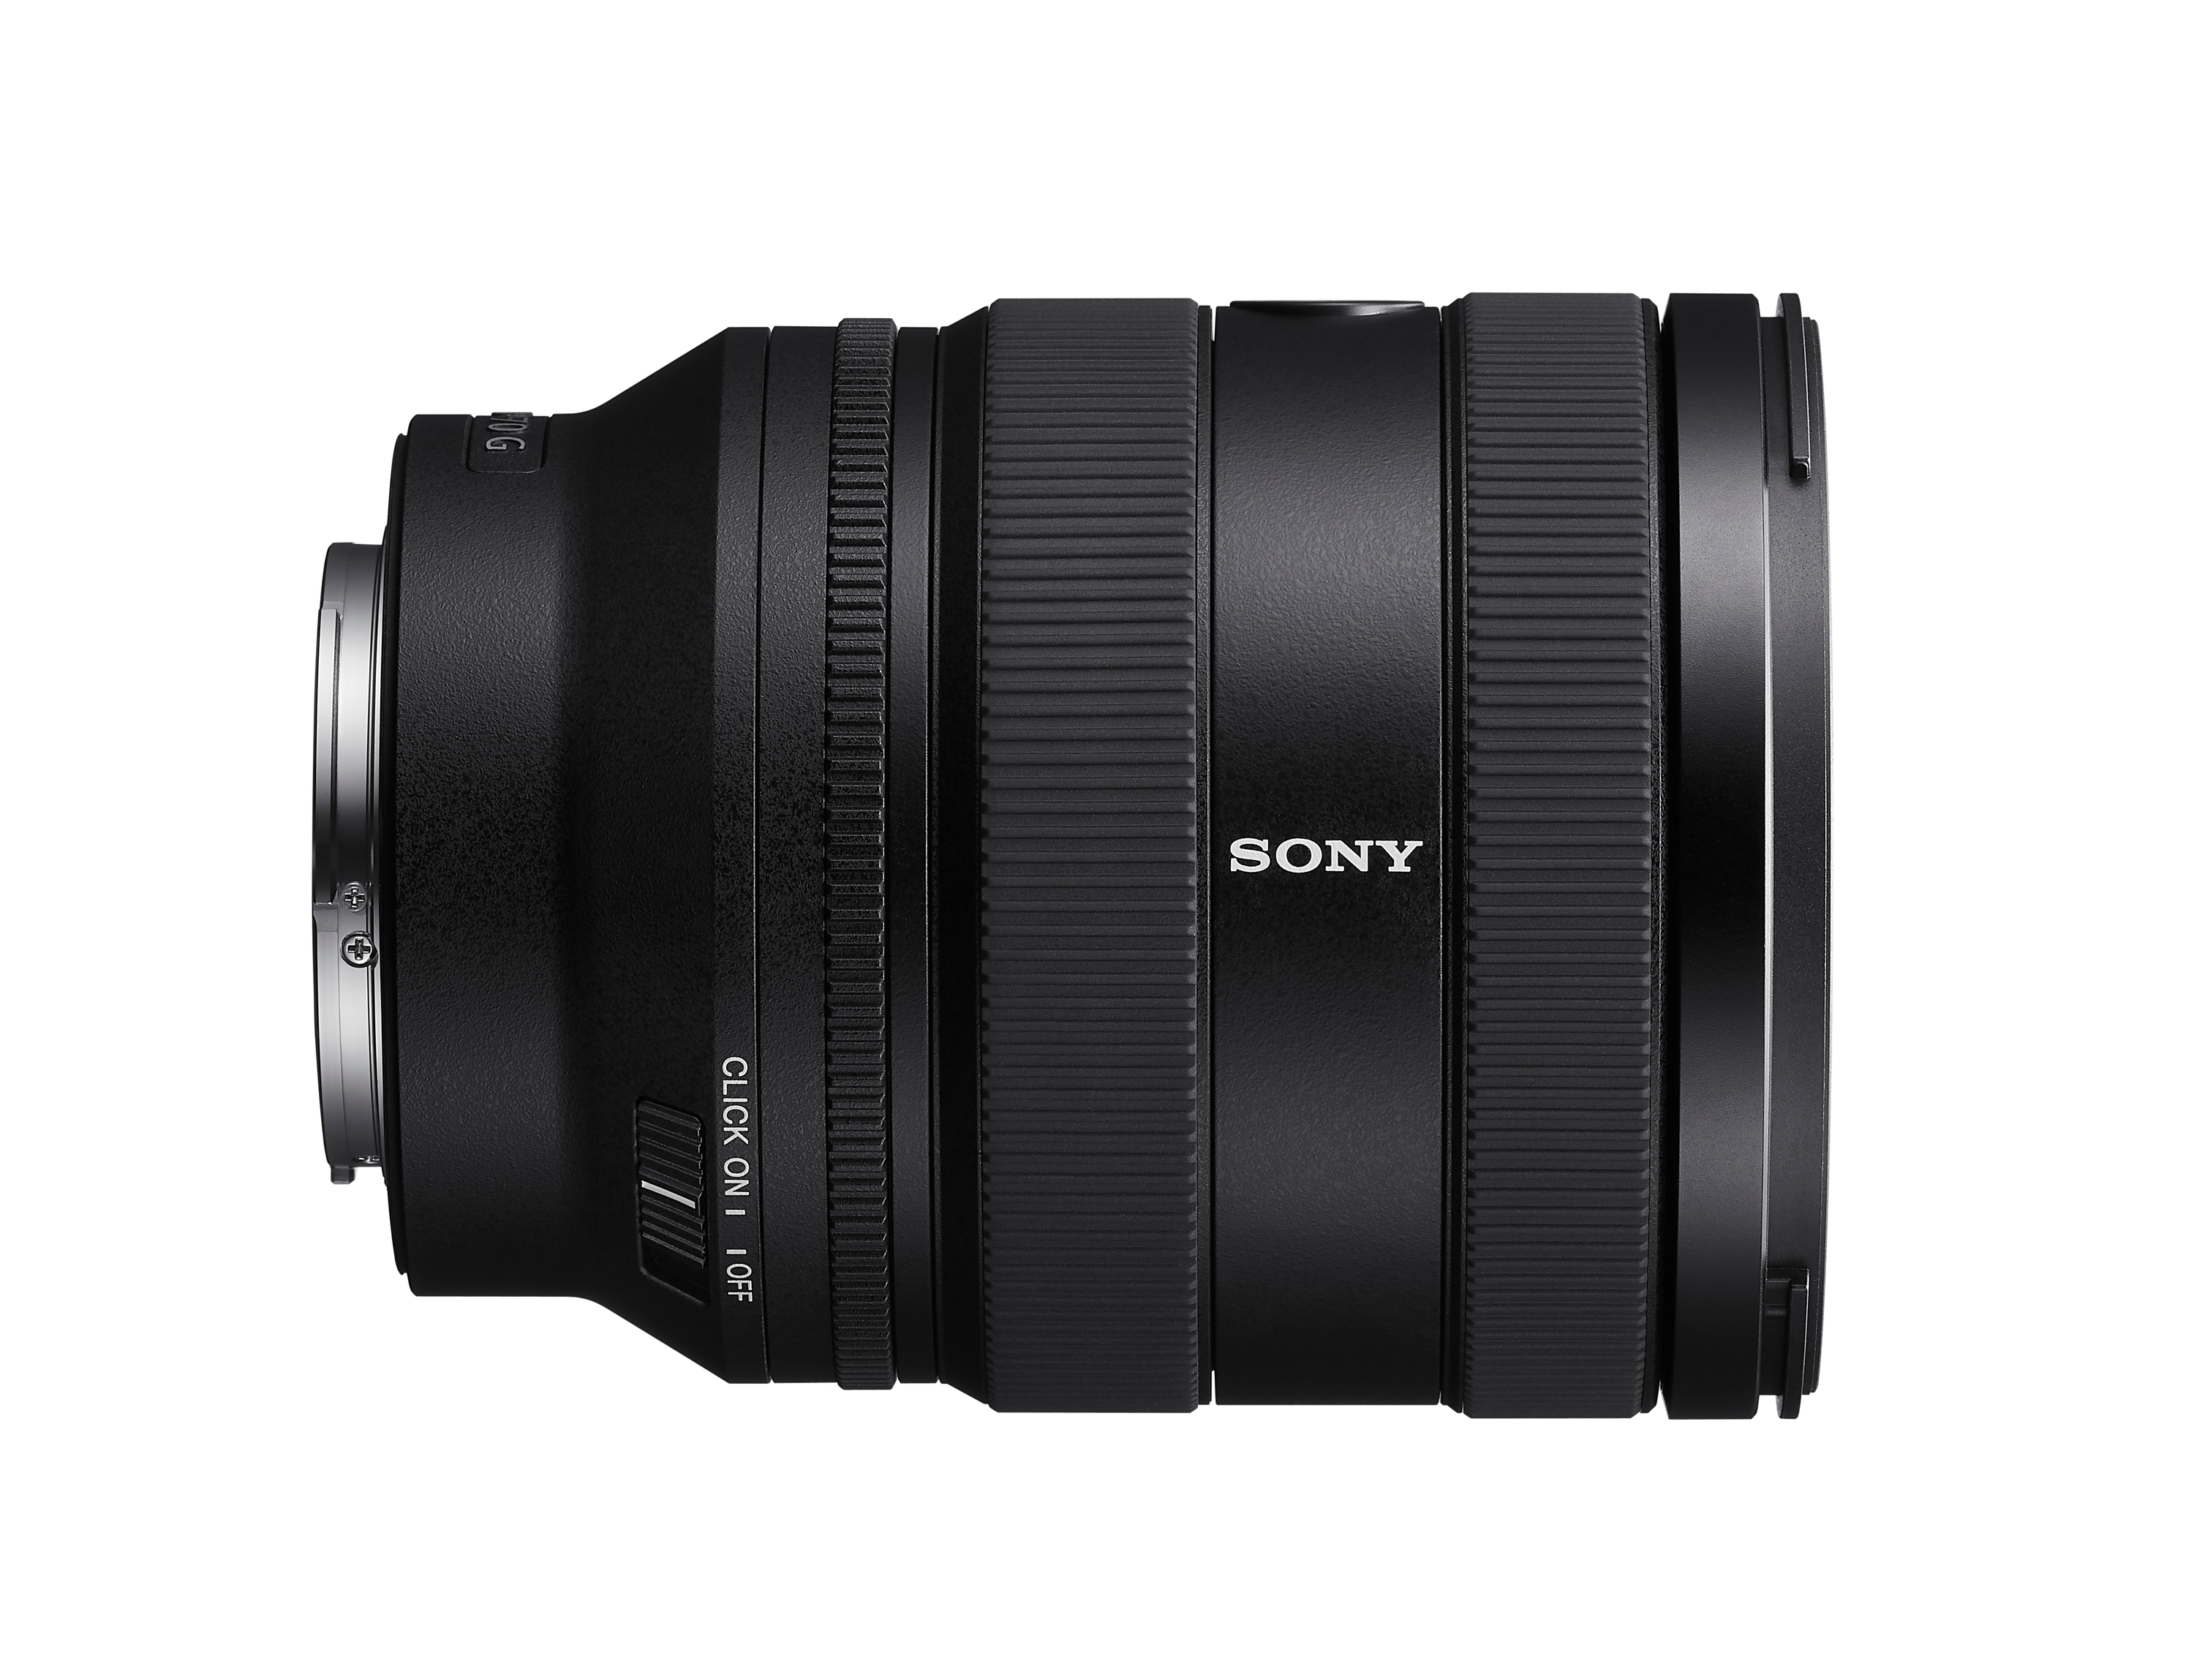   Ống kính Sony FE 20-70mm f/4 G   ( SEL2070G )  | Chính Hãng